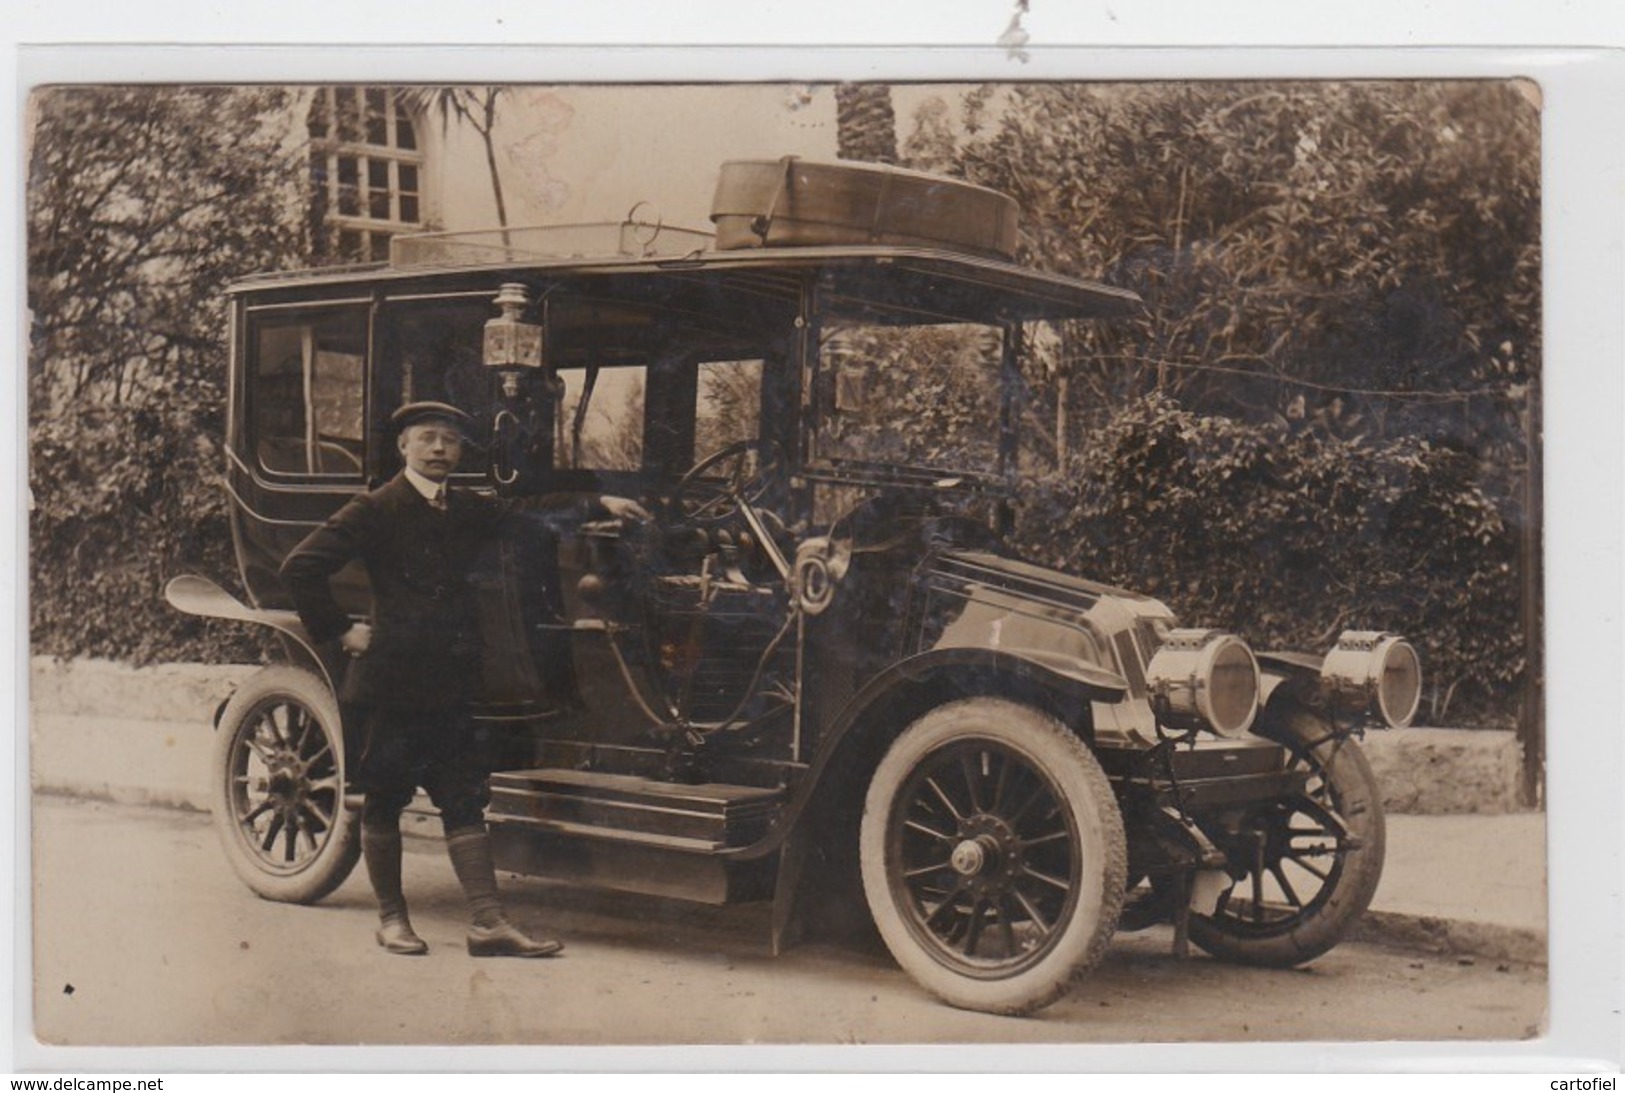 CARTE PHOTO-AUTOMOBILE-AUTO-CAR-TAXI-VOITURE BELGE-NICE-ANVERS-CARTE ENVOYEE-1910-RARE ! ! ! - Taxis & Droschken